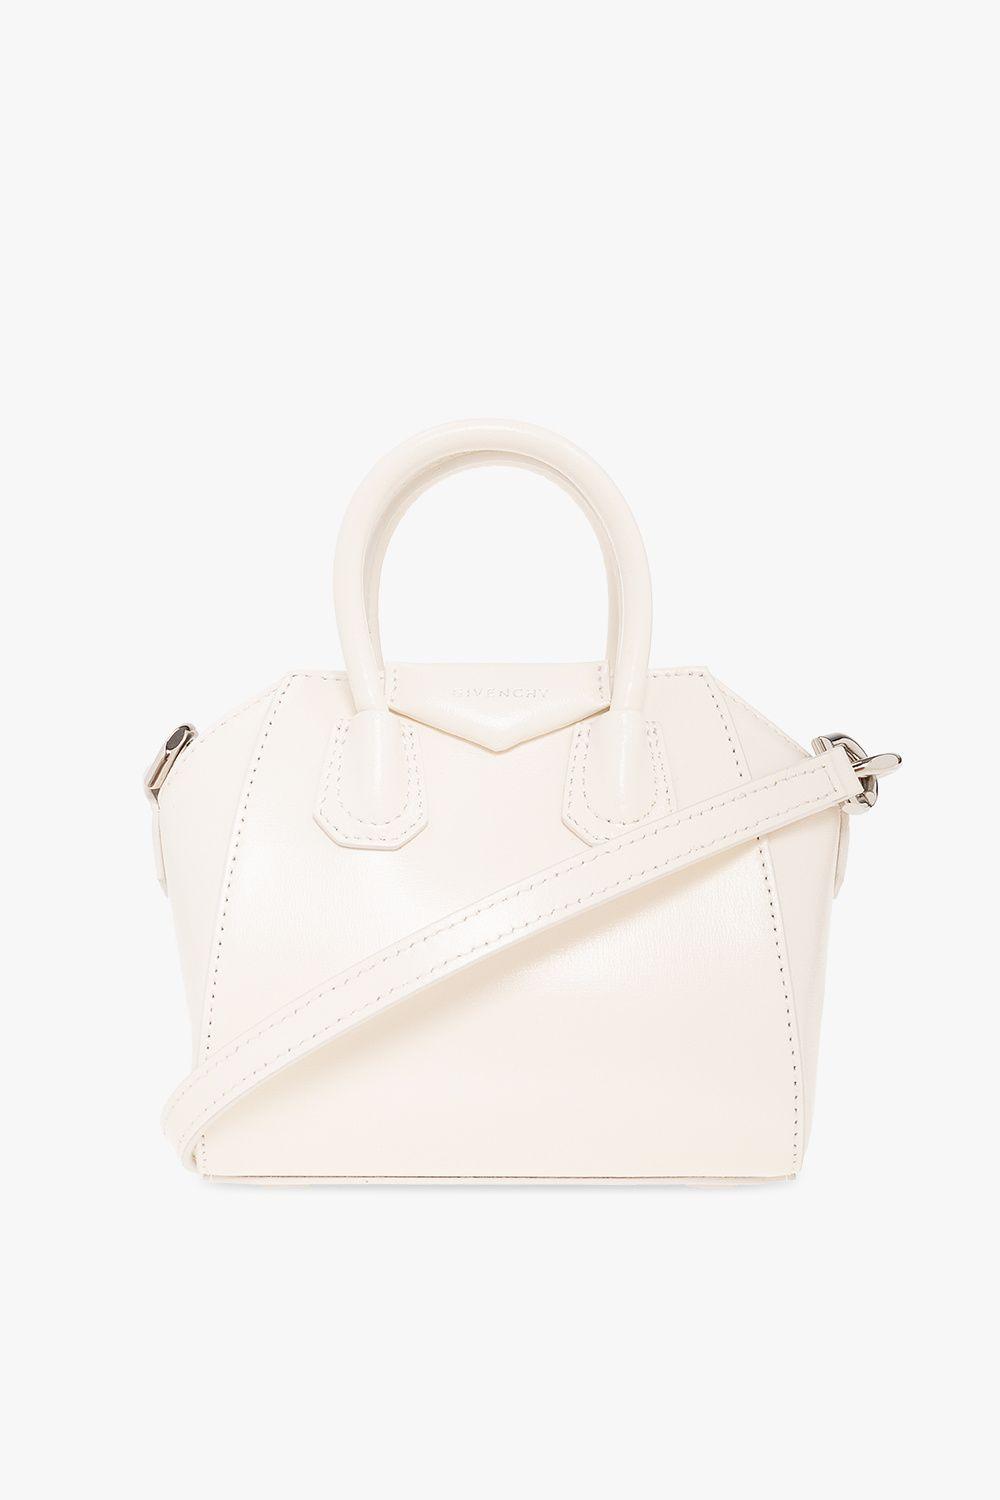 Givenchy 'antigona Micro' Shoulder Bag in Natural